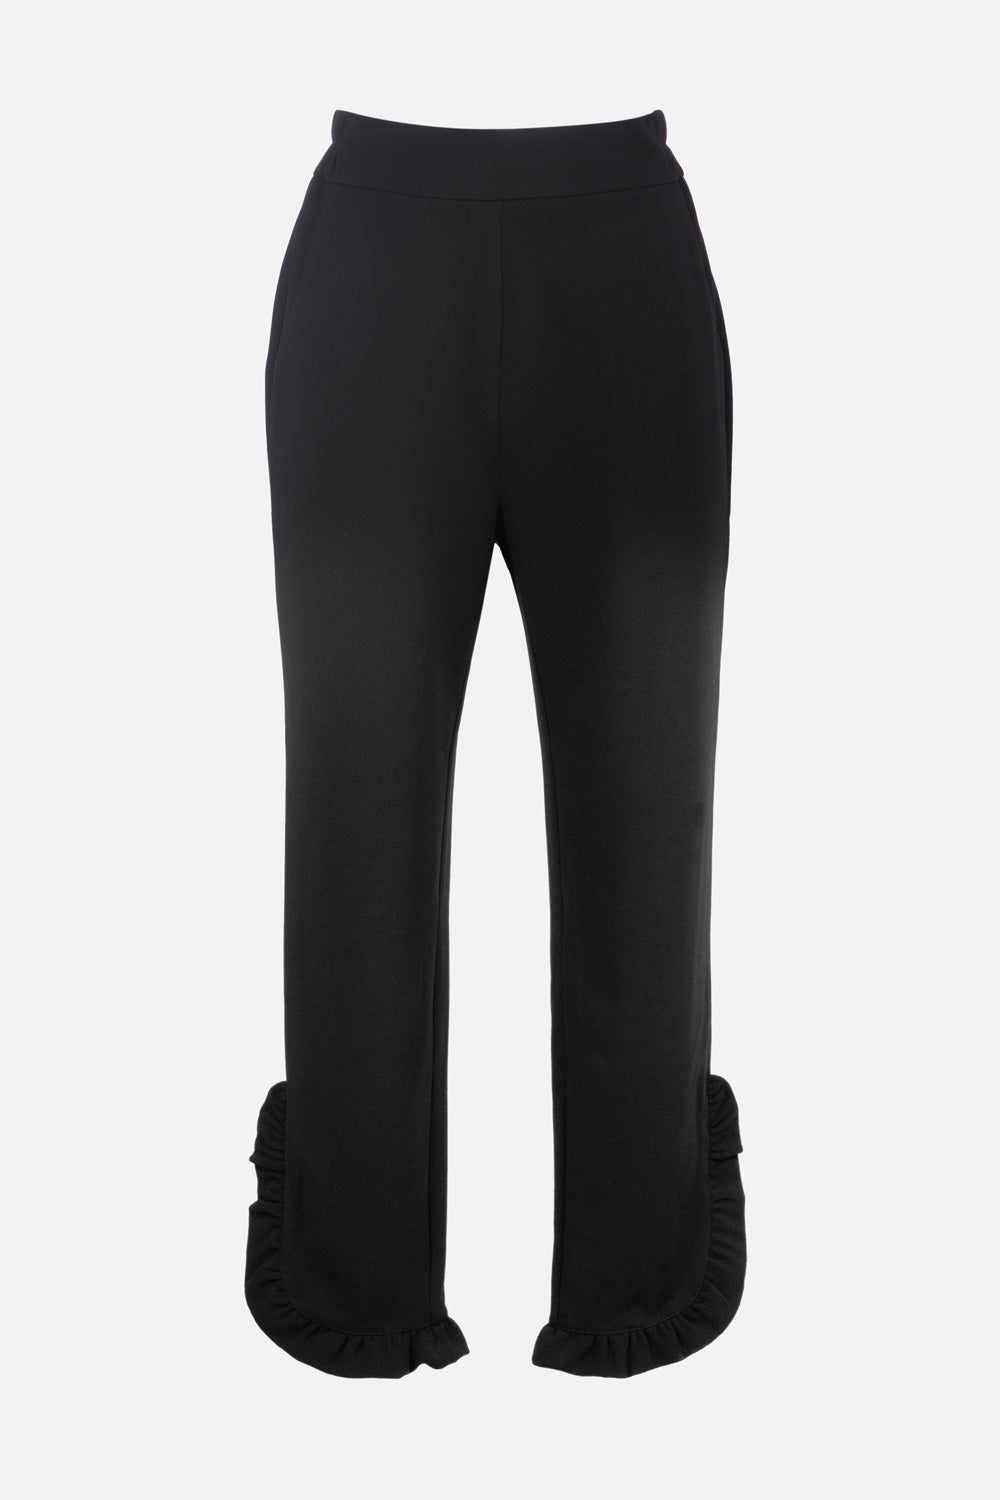 Pantalon noir inspiration corsaire